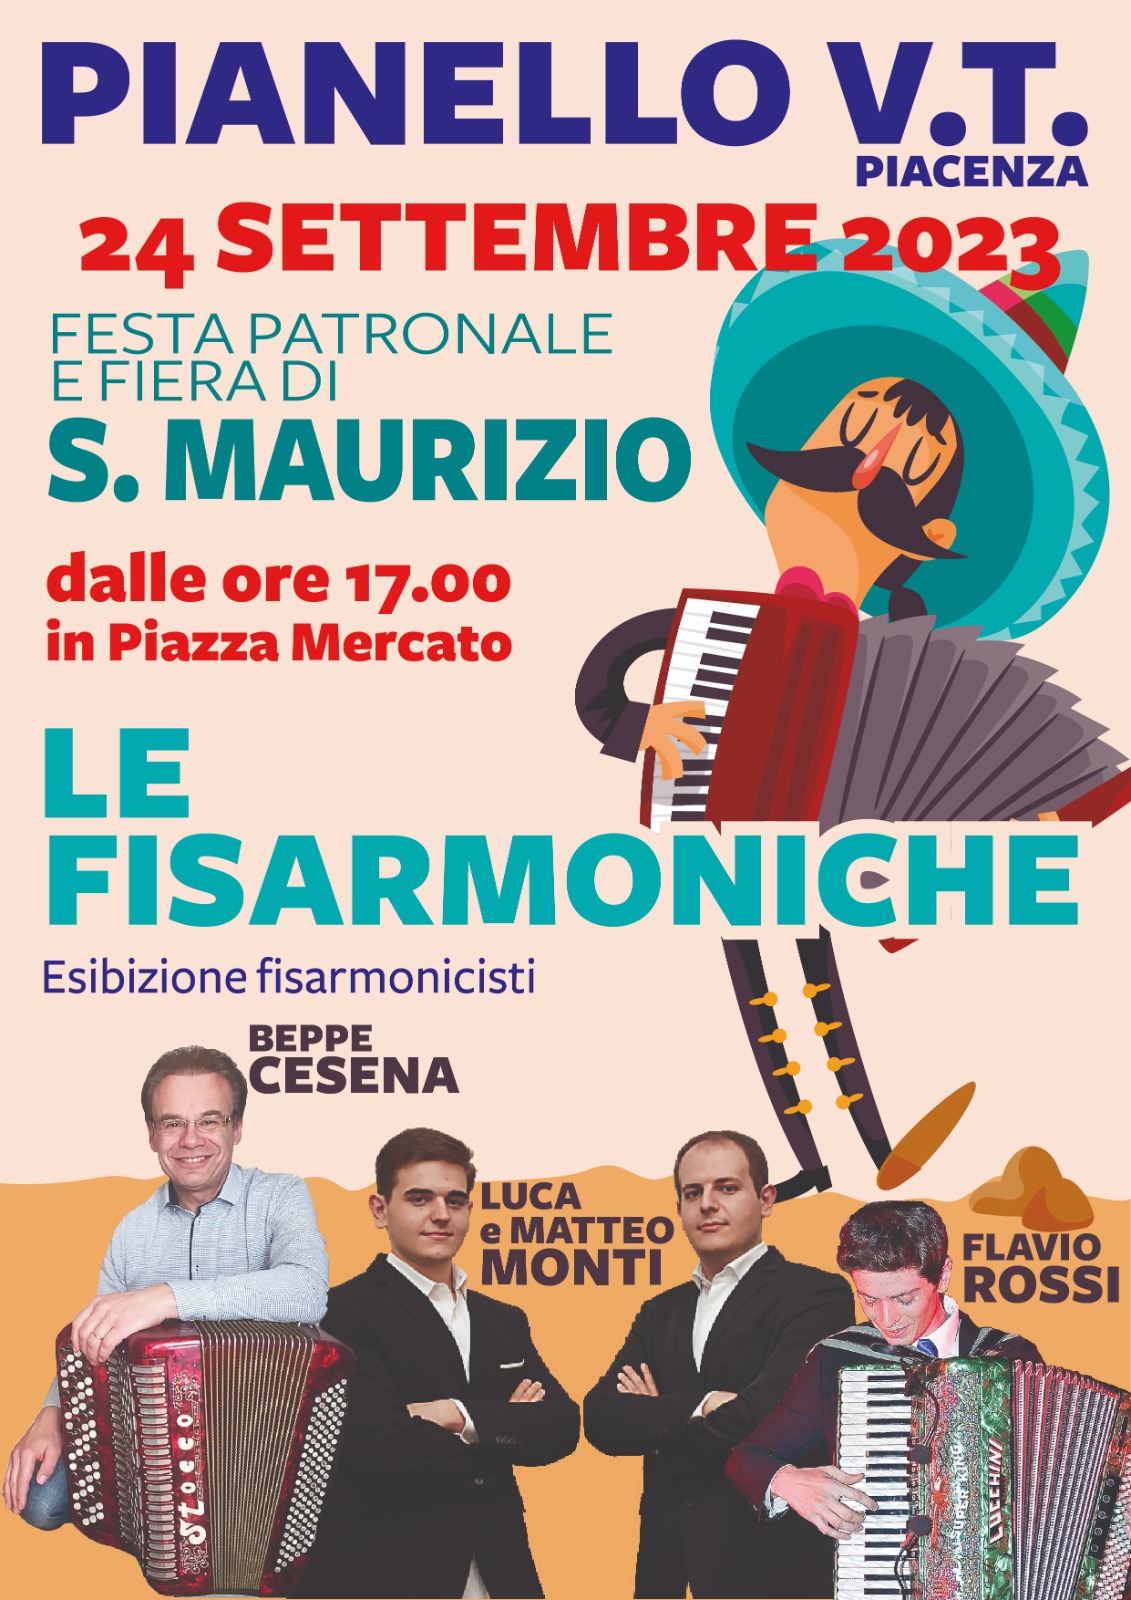 Le Fisarmoniche Pianello Domenica 24 Settembre 2023 Fiera di San Maurizio